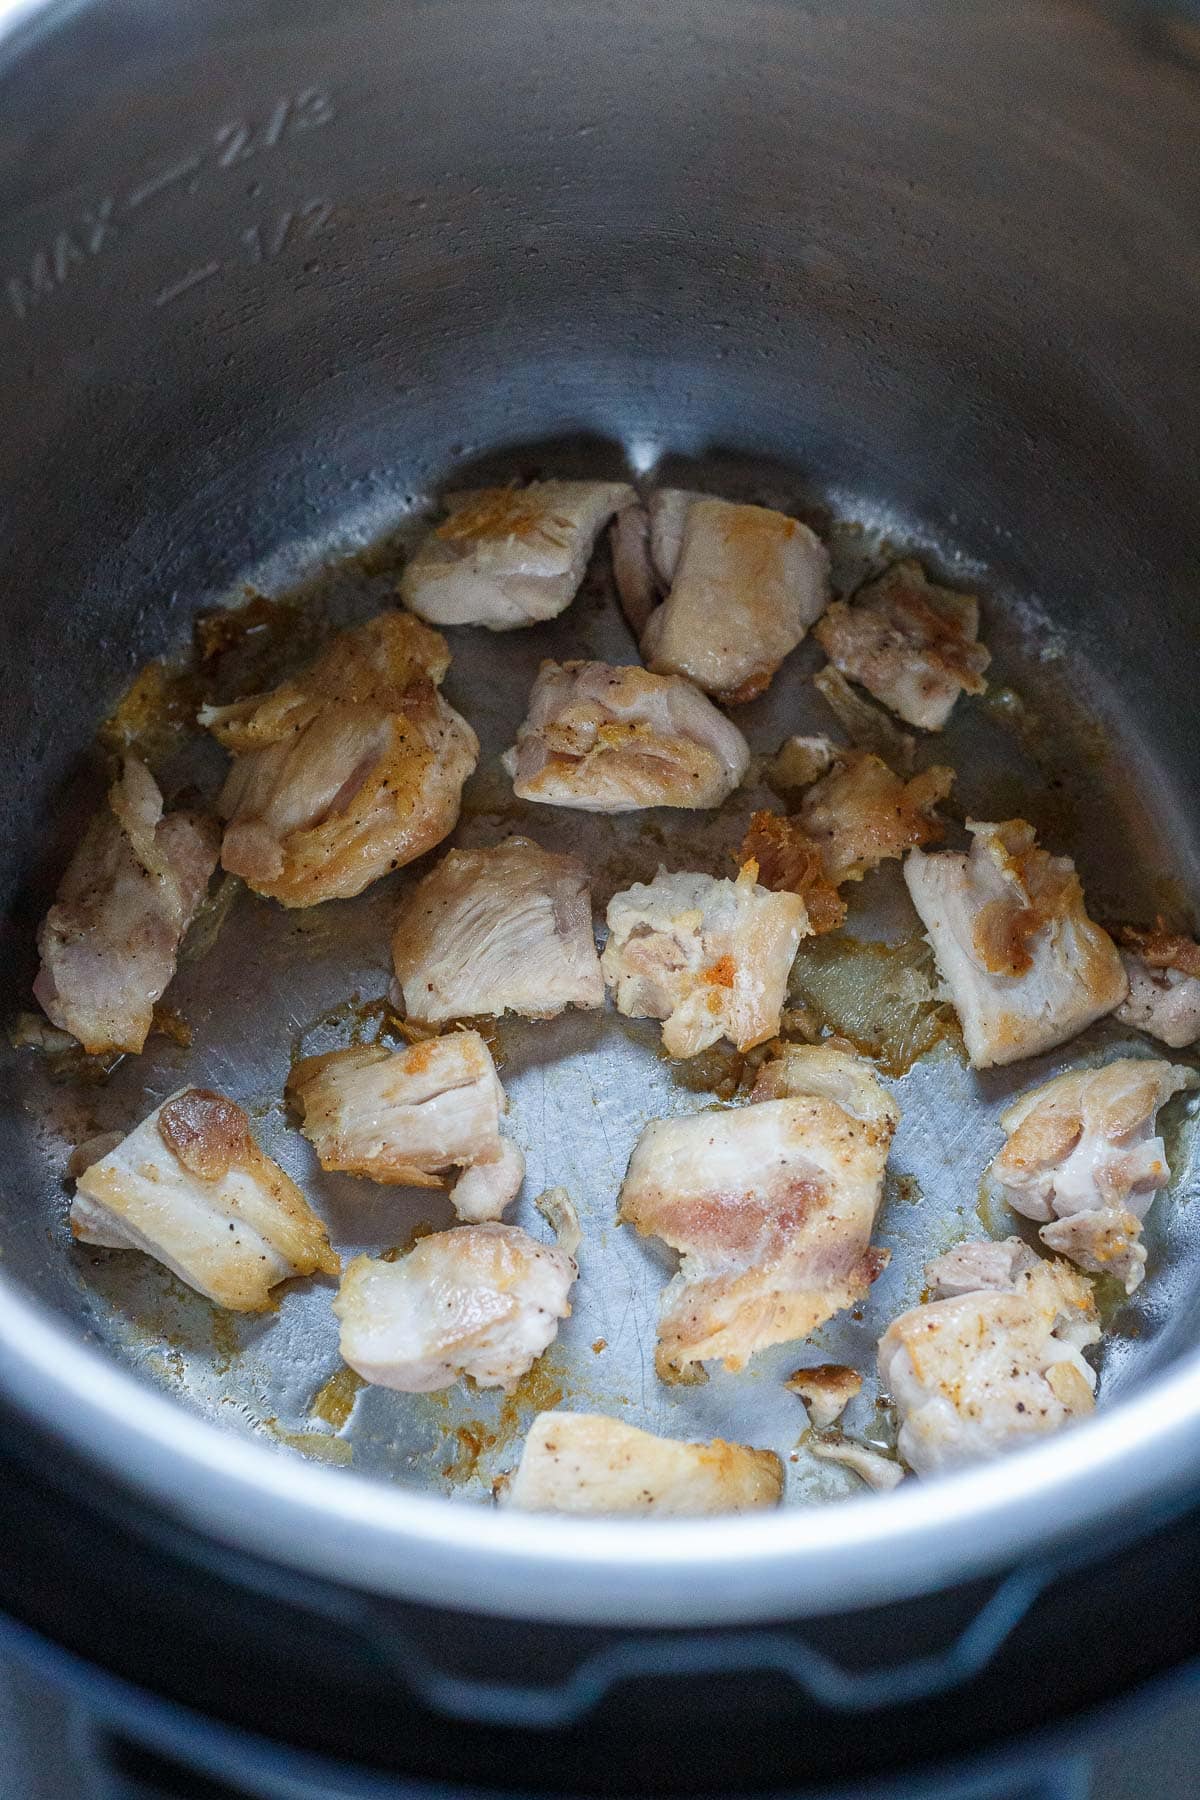 cubed chicken sautéing in instant pot to make teriykai chicken.